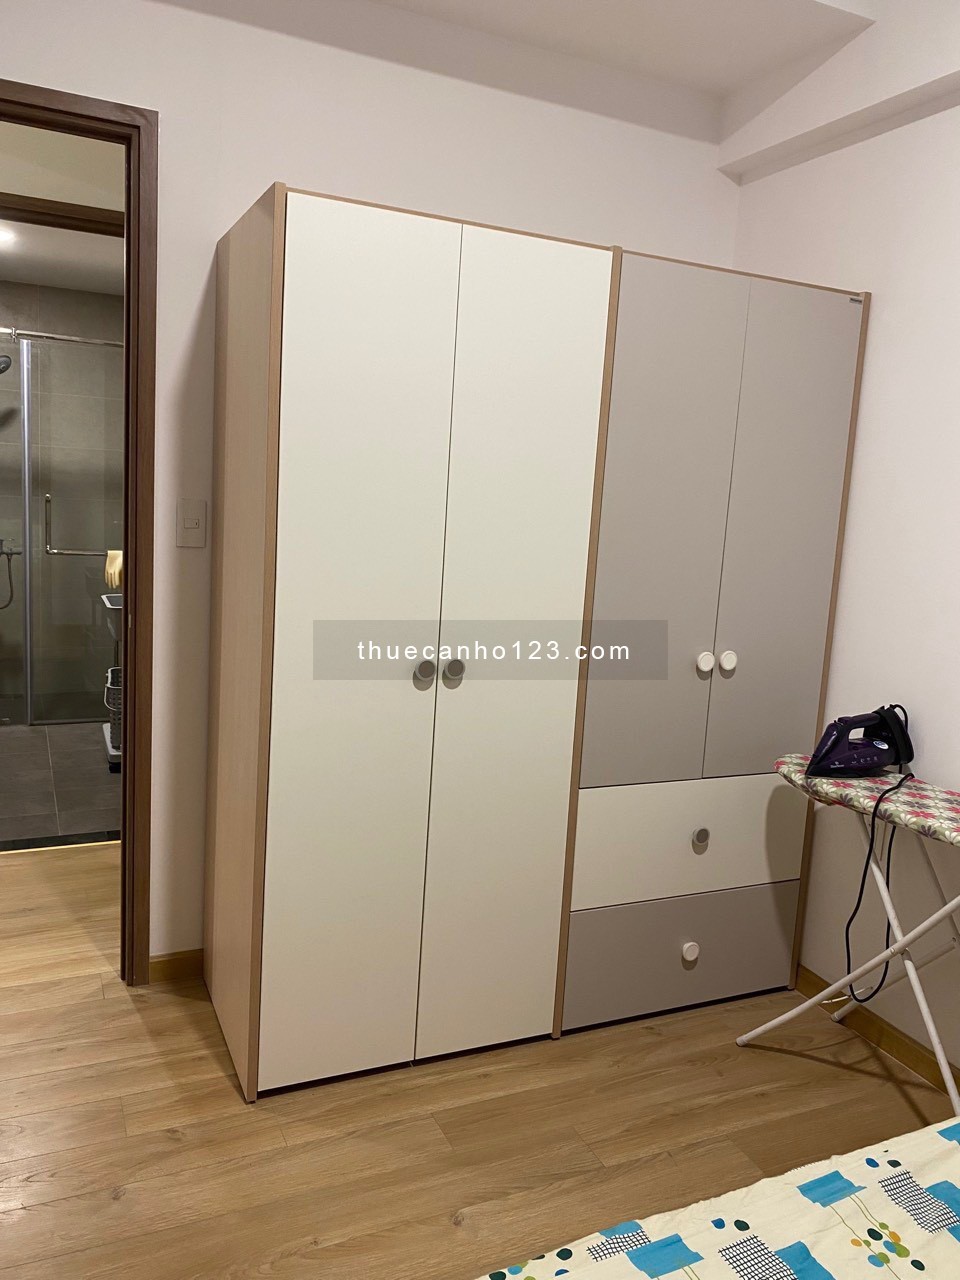 Nhà mới đầy đủ thiết bị máy lạnh, giường tủ, bếp... 2PN - Võ Văn Kiệt, Bình Tân - Giáp Q5,6,8